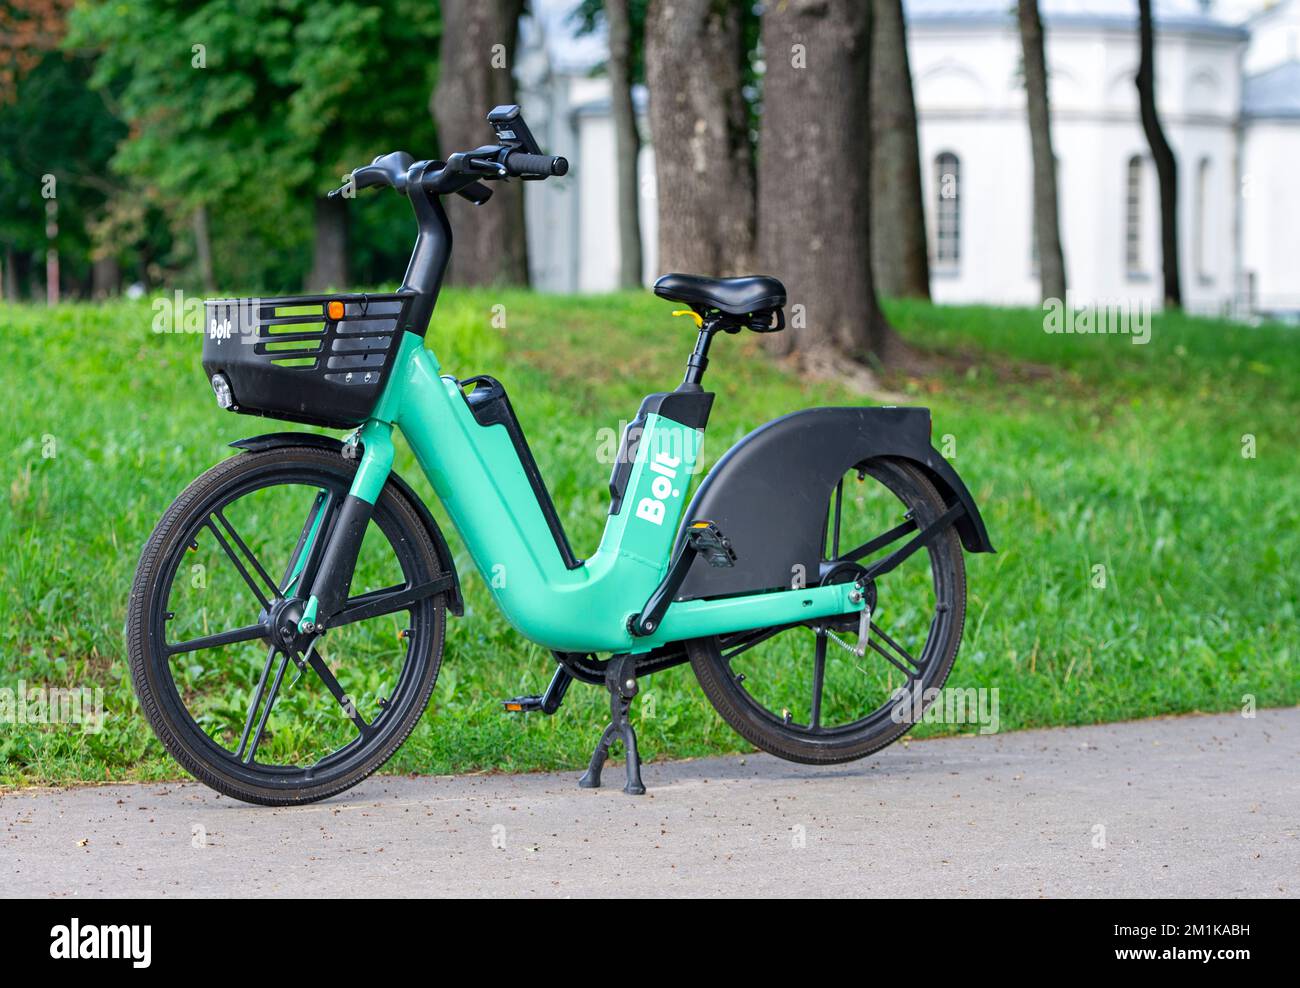 KAUNAS - JULI 07: Bolzenfahrrad parkt in Kaunas am 07. Juli. 2022 in Litauen. Bolt ist ein estnisches Mobilitätsunternehmen, das Mietwagen anbietet, Micromobil Stockfoto